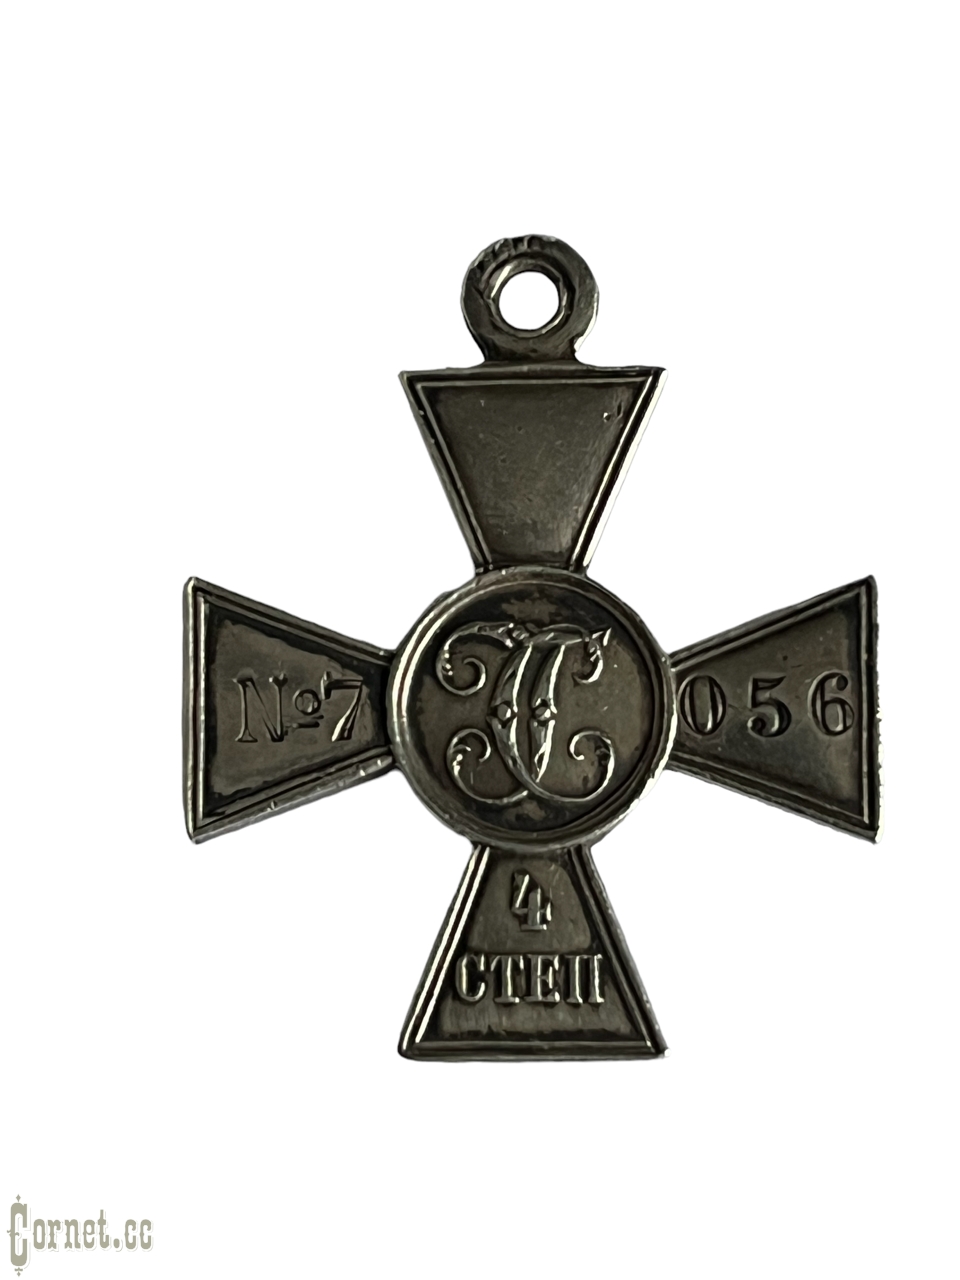 Георгиевский крест 4 степени № 7056